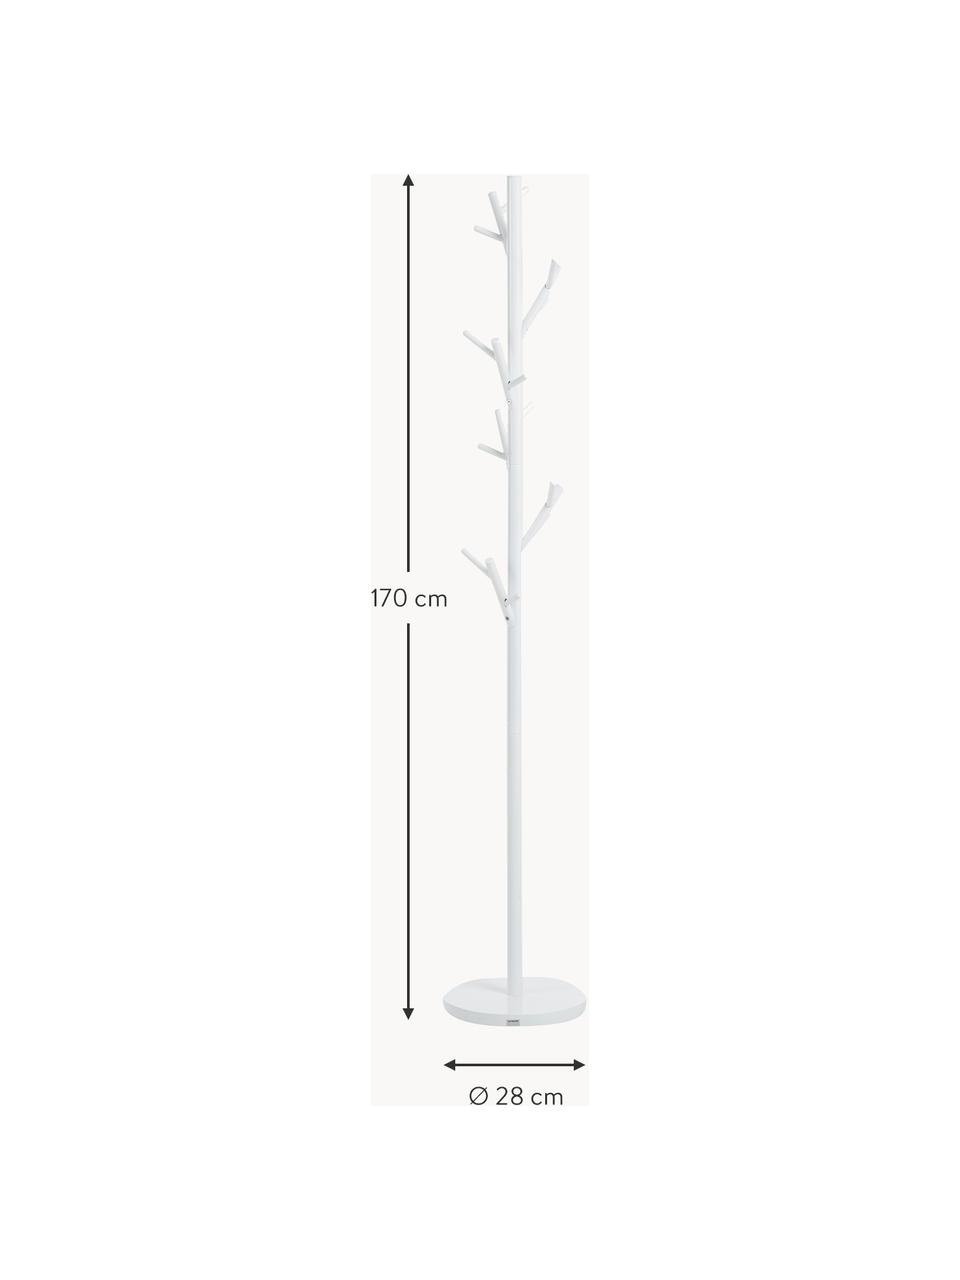 Kleiderständer Tree, Stahlrohr, pulverbeschichtet, Weiss, H 170 cm